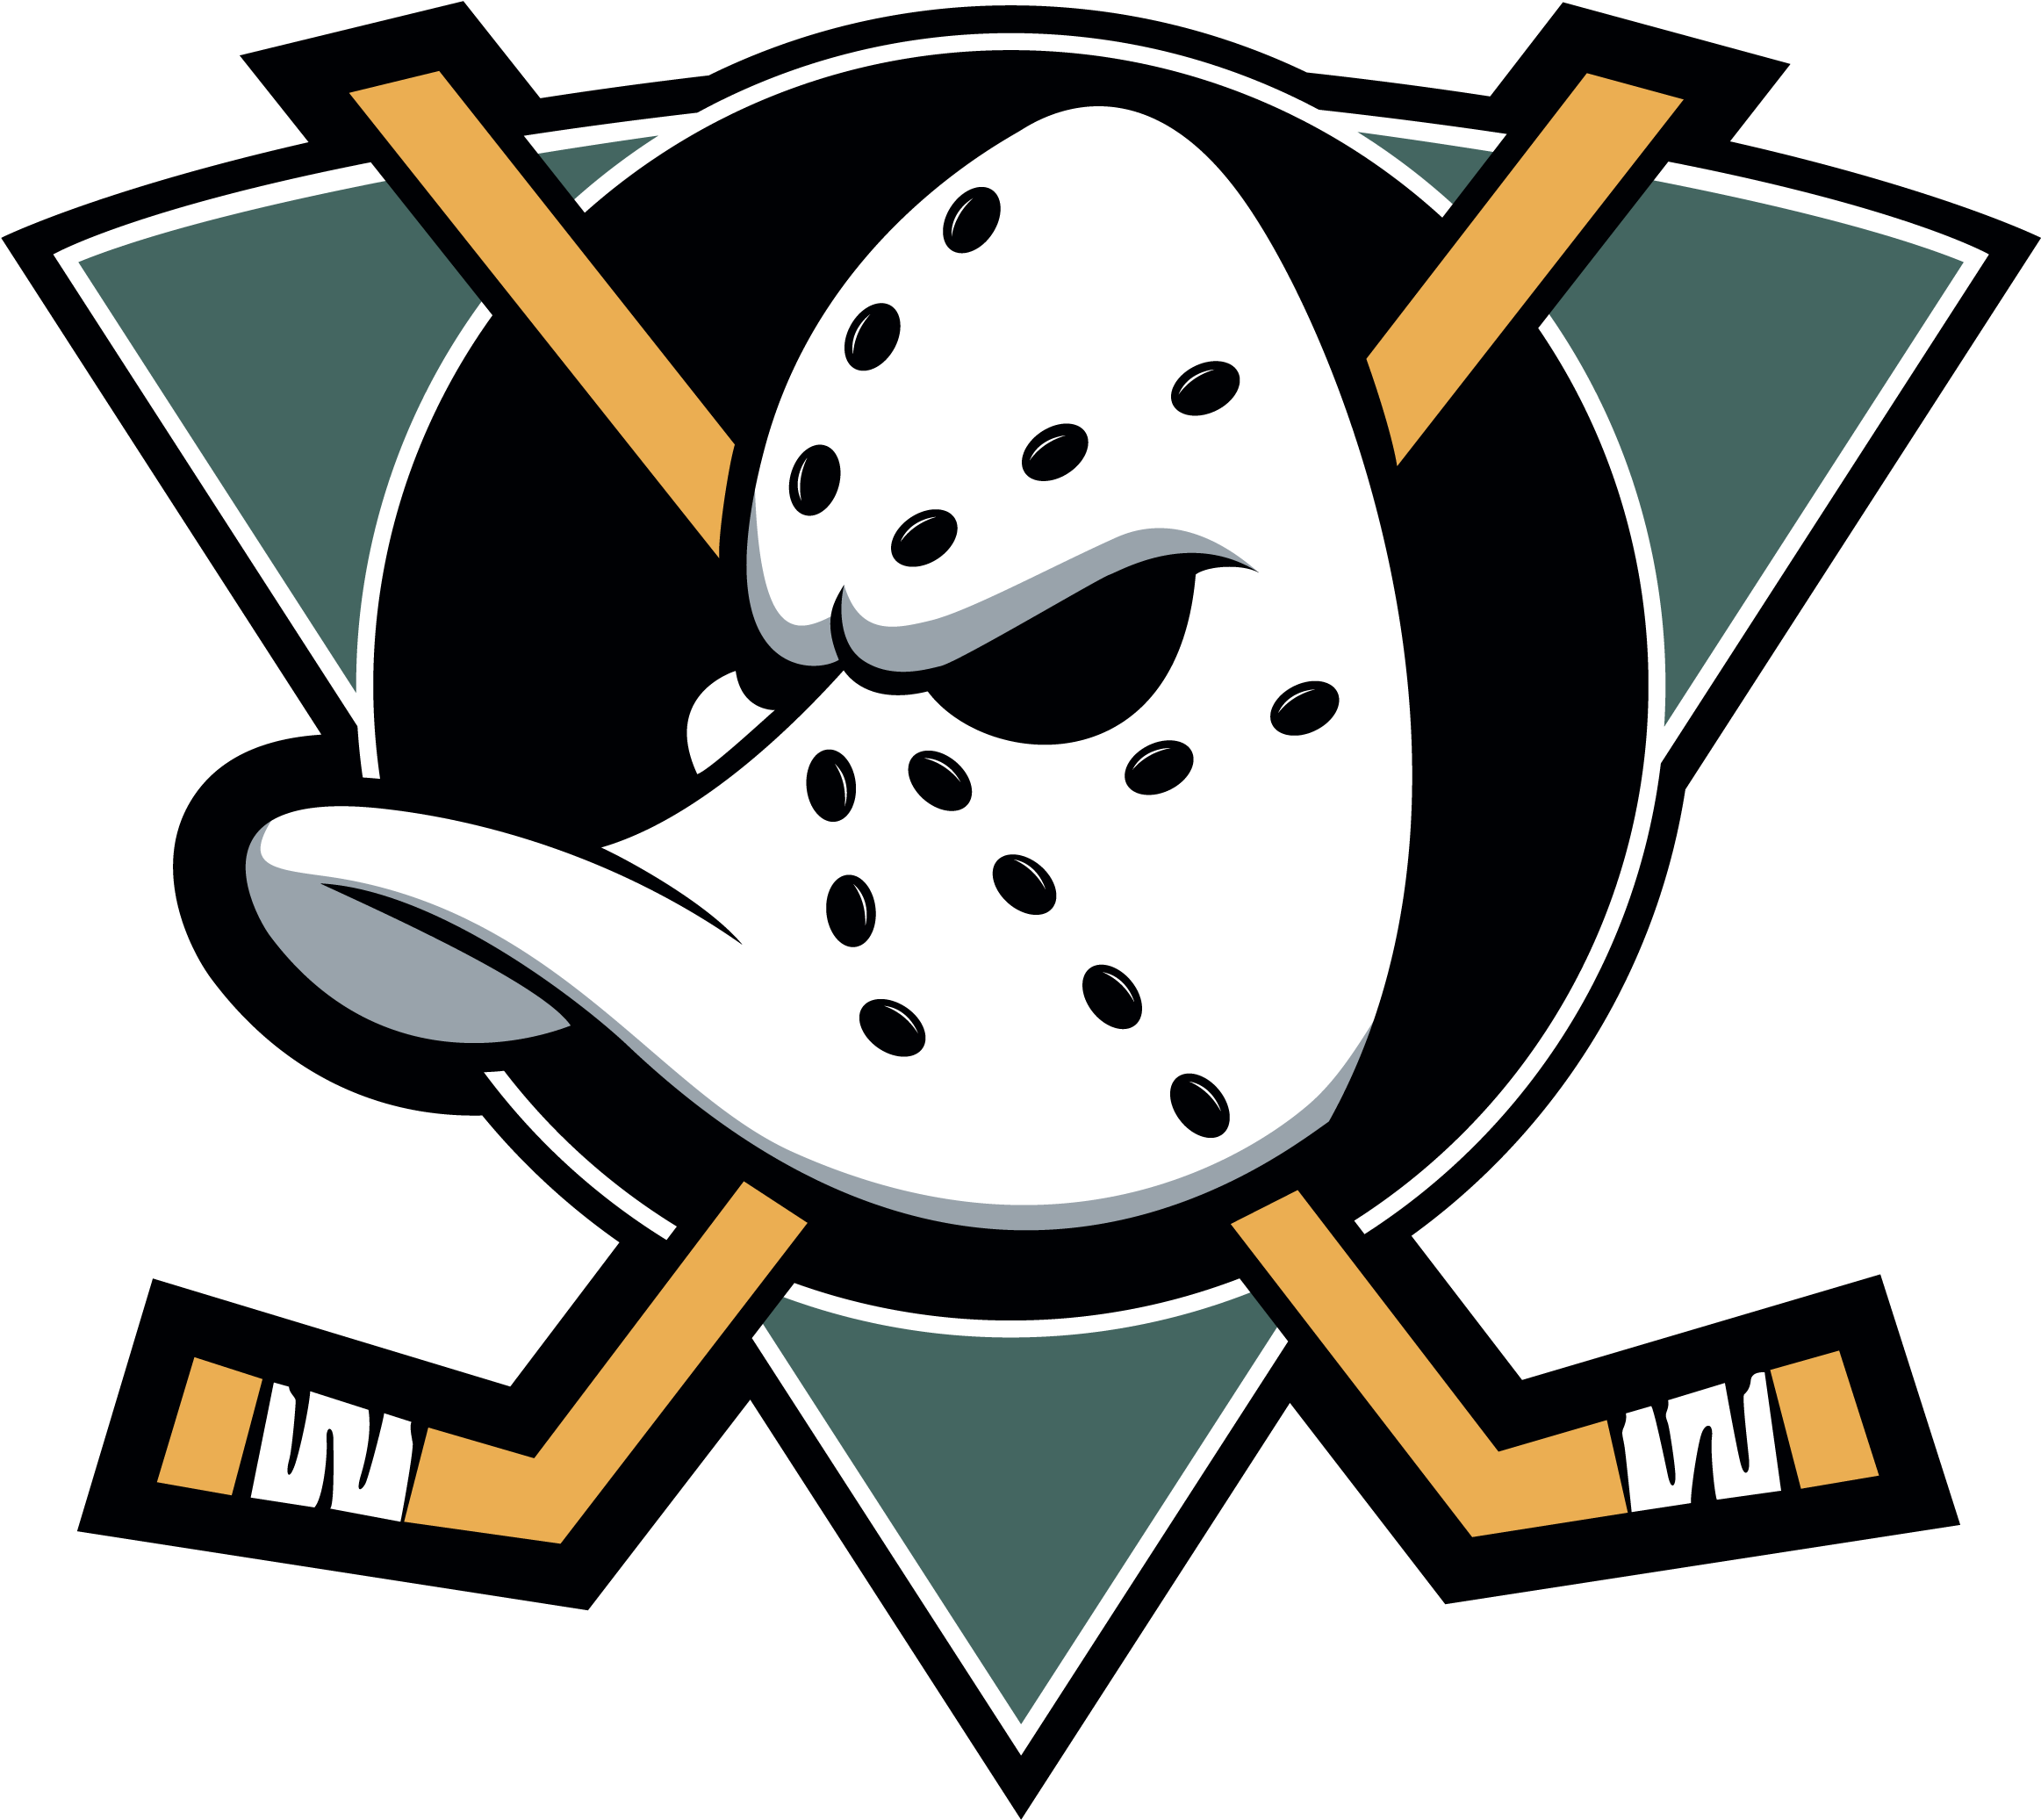 Anaheim Ducks Old Logo - Mighty Ducks Of Anaheim (3840x2160)